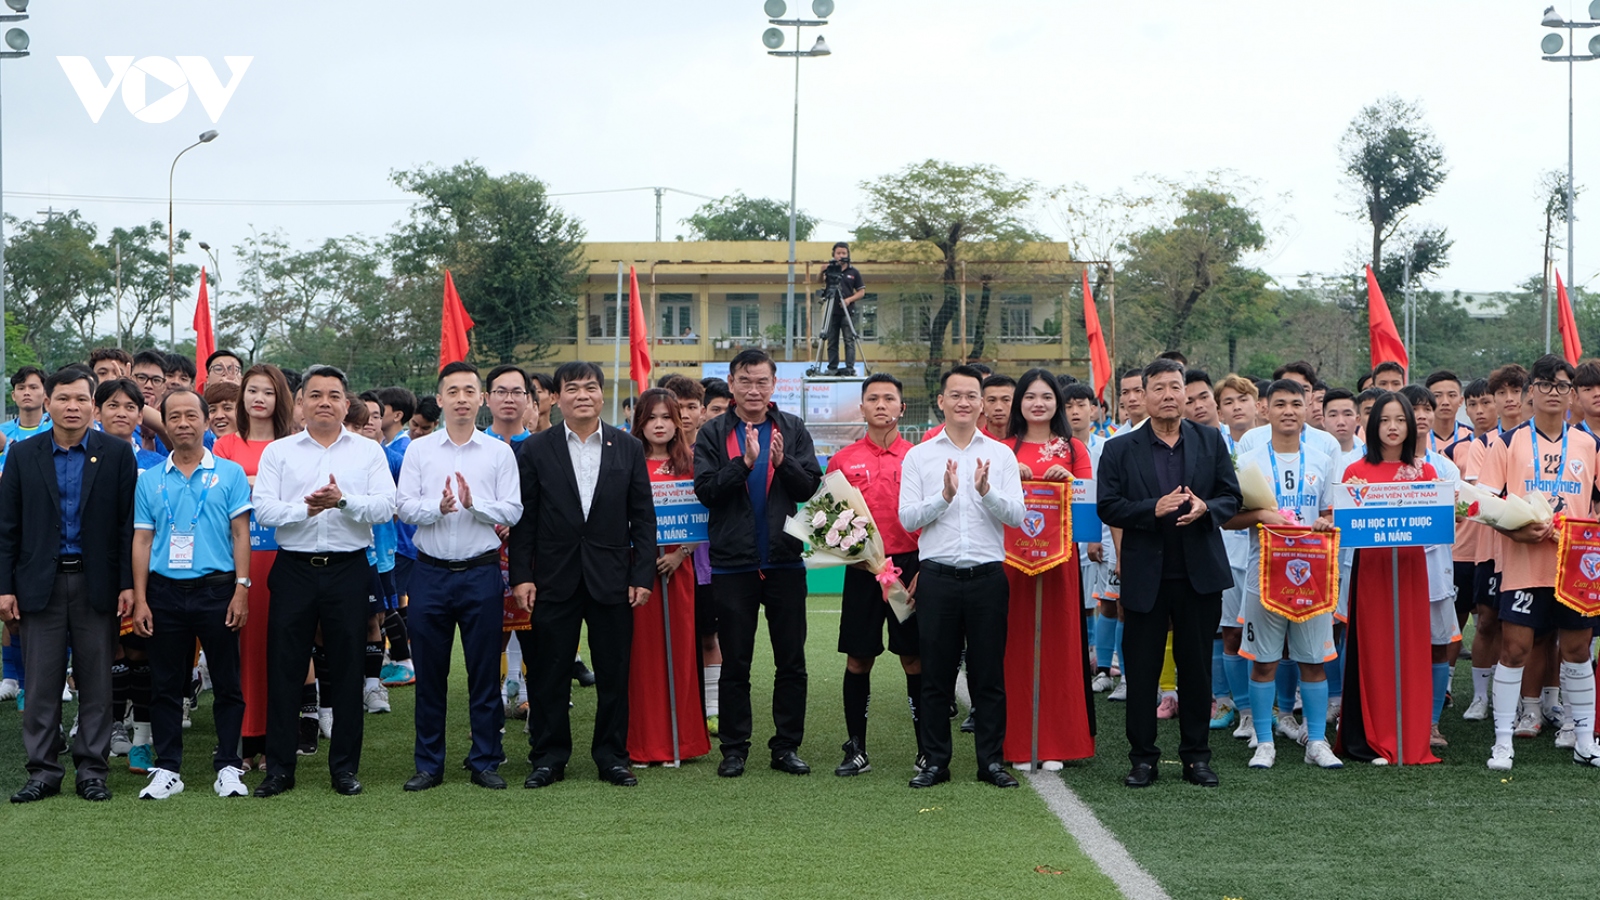 Khai mạc vòng loại Giải bóng đá Thanh niên sinh viên khu vực miền Trung lần thứ Nhất